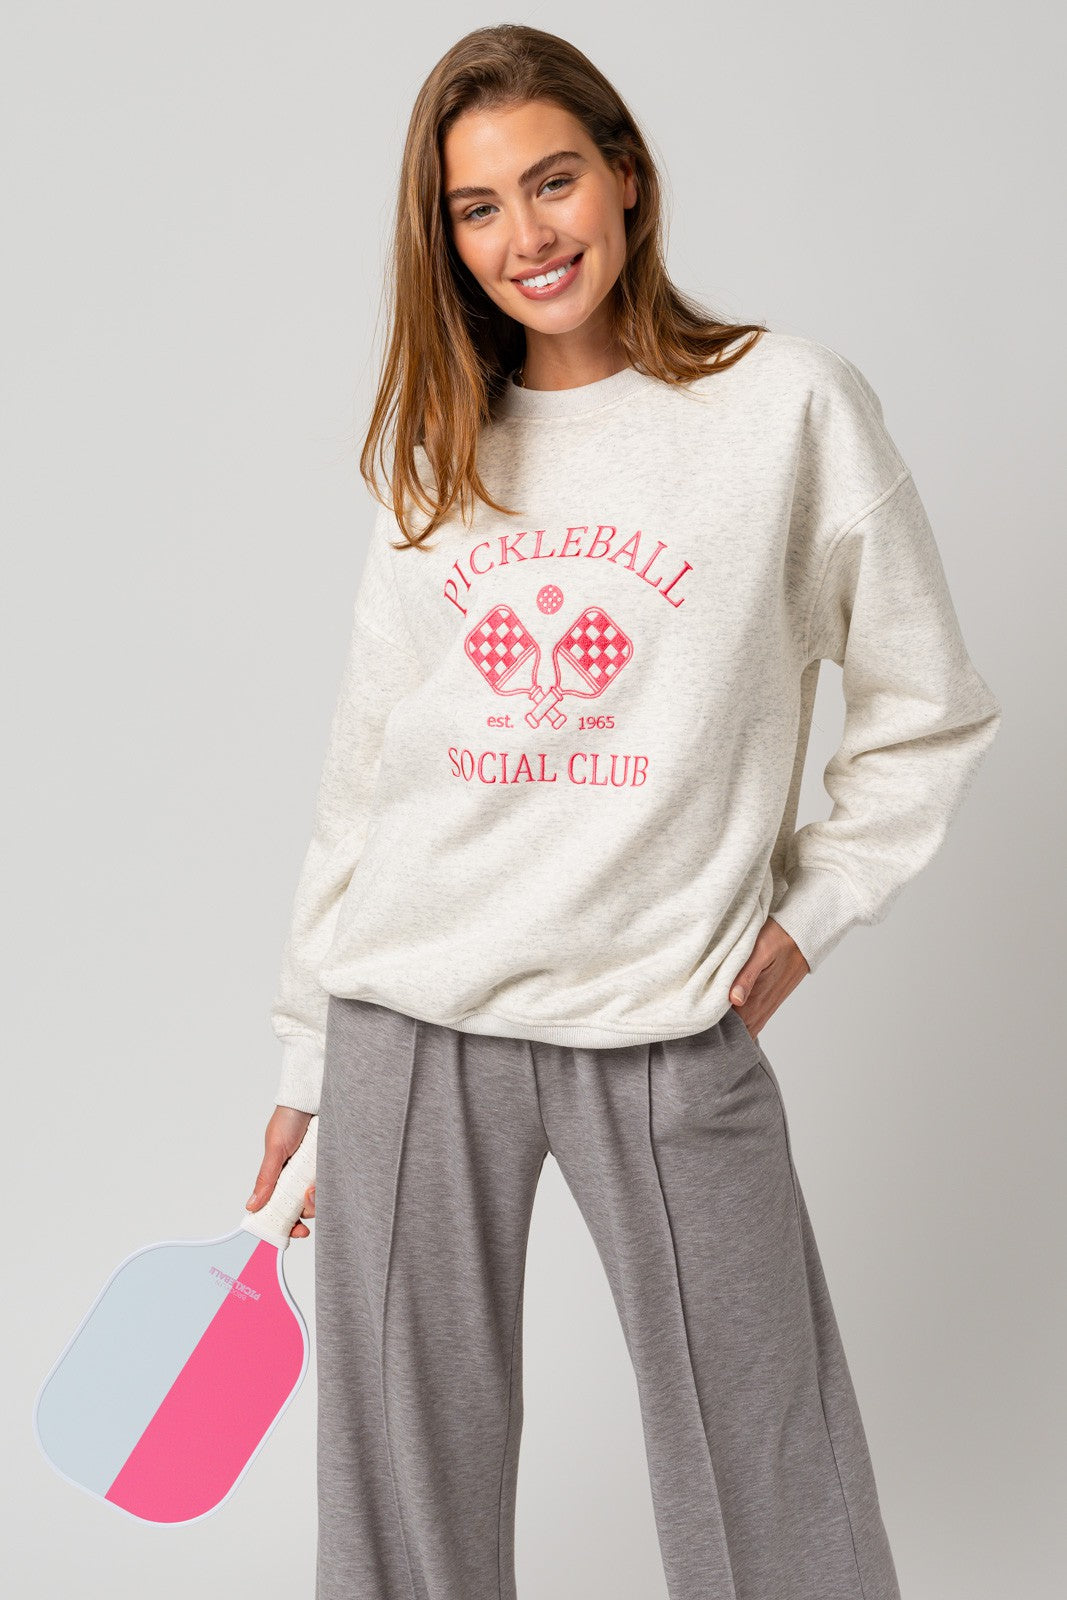 Pickleball Social Club Sweatshirt